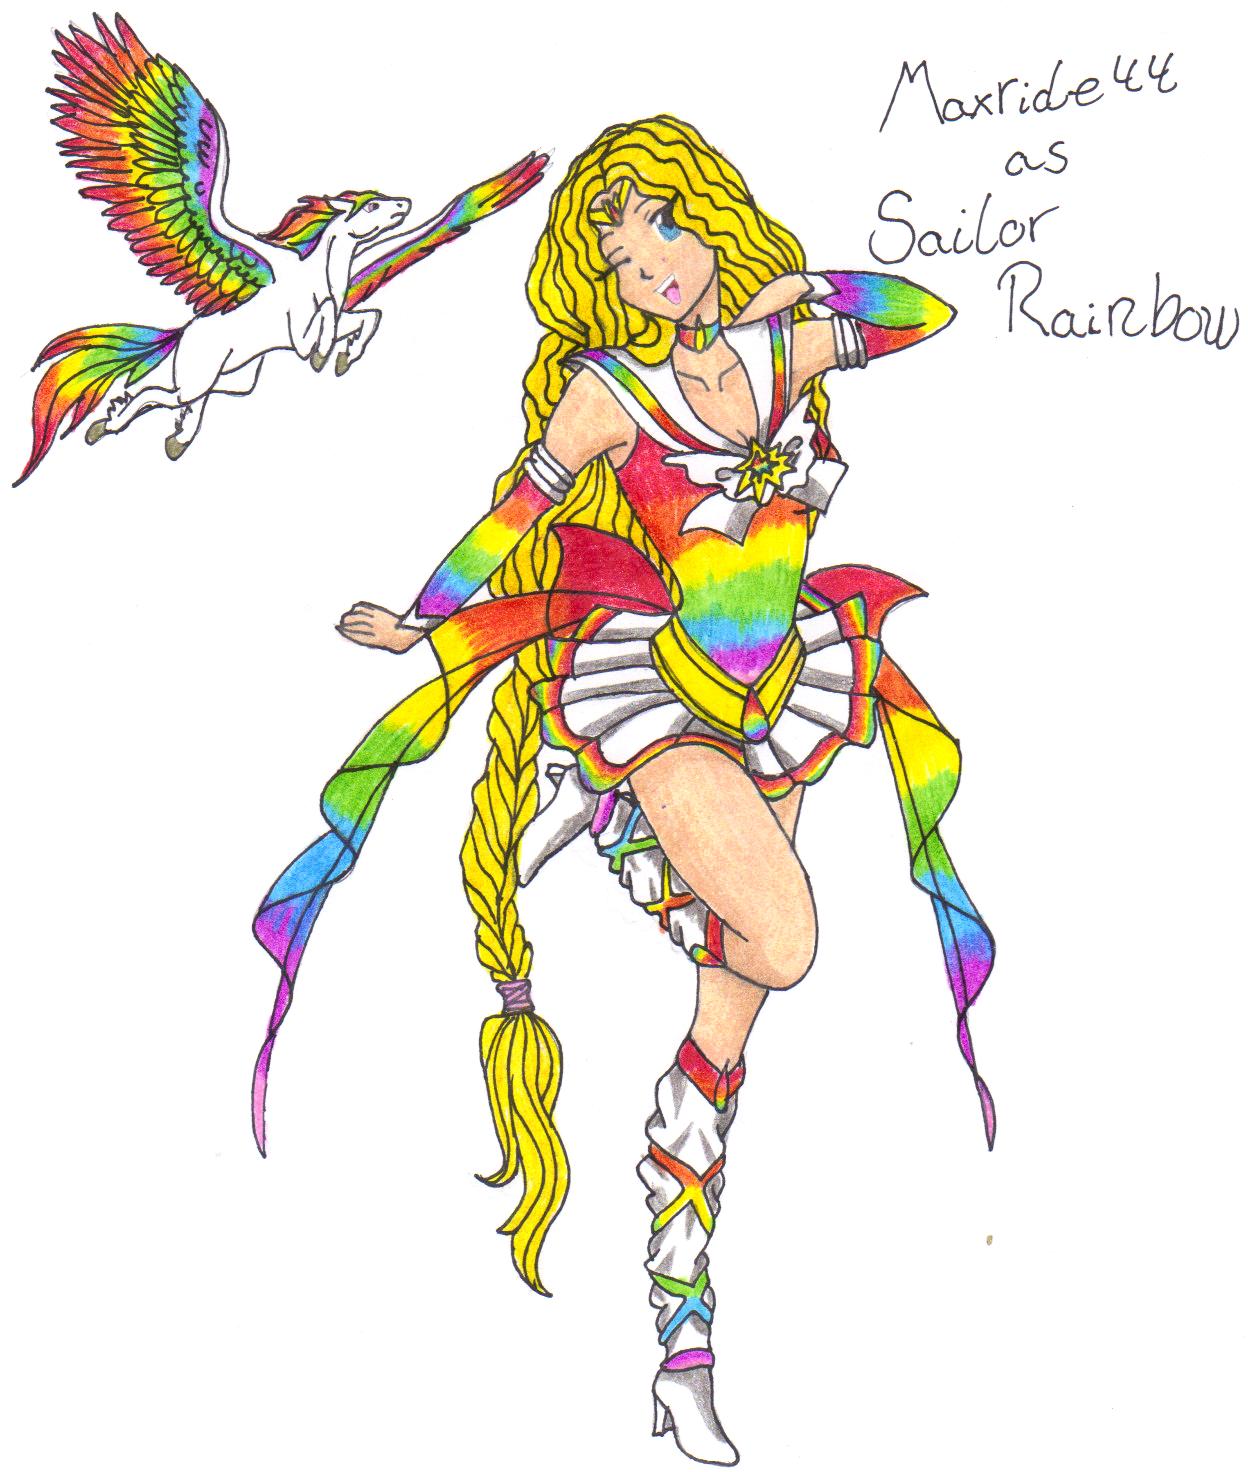 Maxride44 as Sailor Rainbow by setoXyamiKaiba4ever